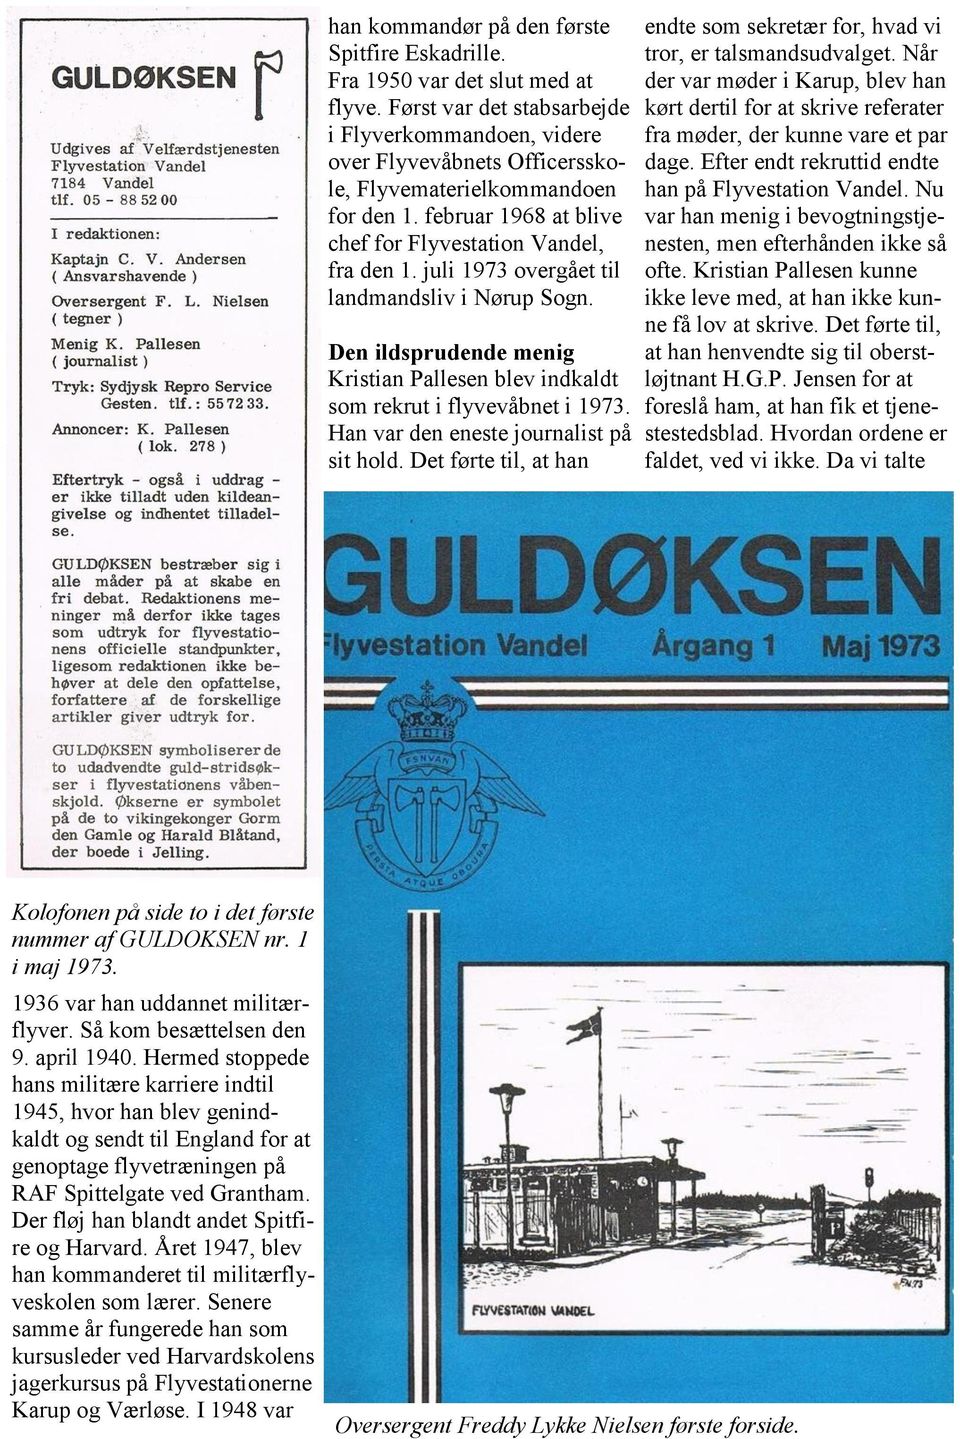 juli 1973 overgået til landmandsliv i Nørup Sogn. Den ildsprudende menig Kristian Pallesen blev indkaldt som rekrut i flyvevåbnet i 1973. Han var den eneste journalist på sit hold.